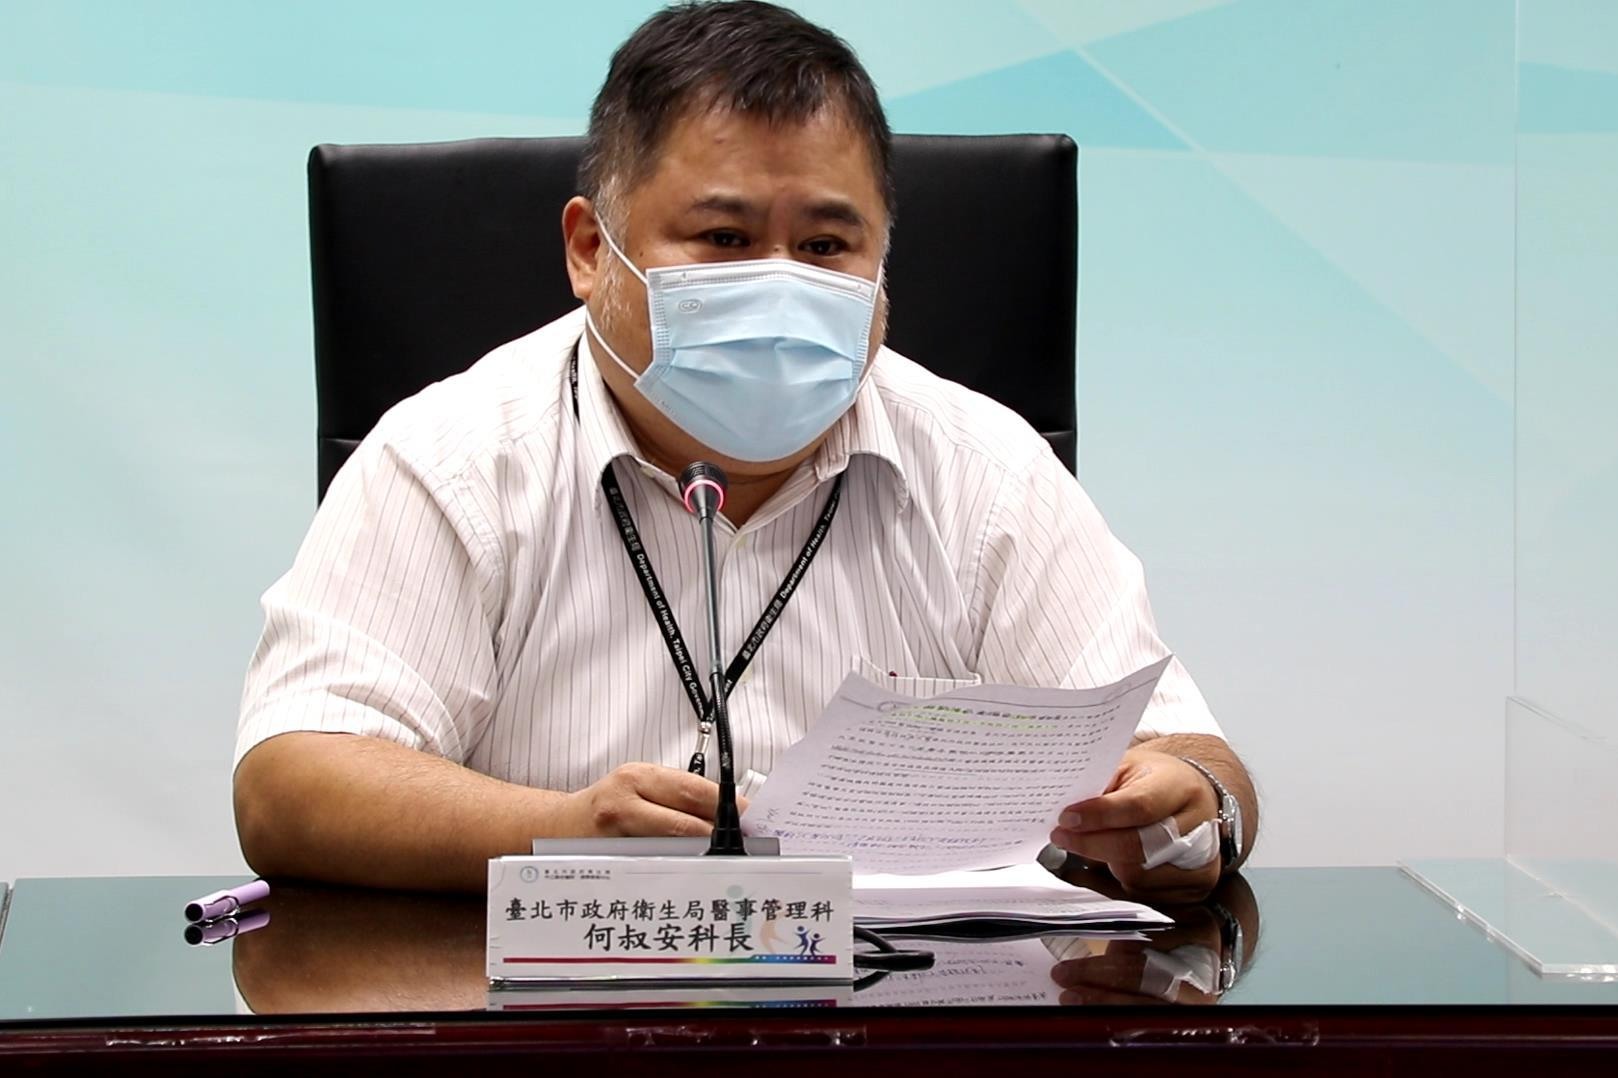 臺北市衛生局醫事管理科何叔安科長呼籲民眾務必尋找核准的醫療院所提供醫療協助